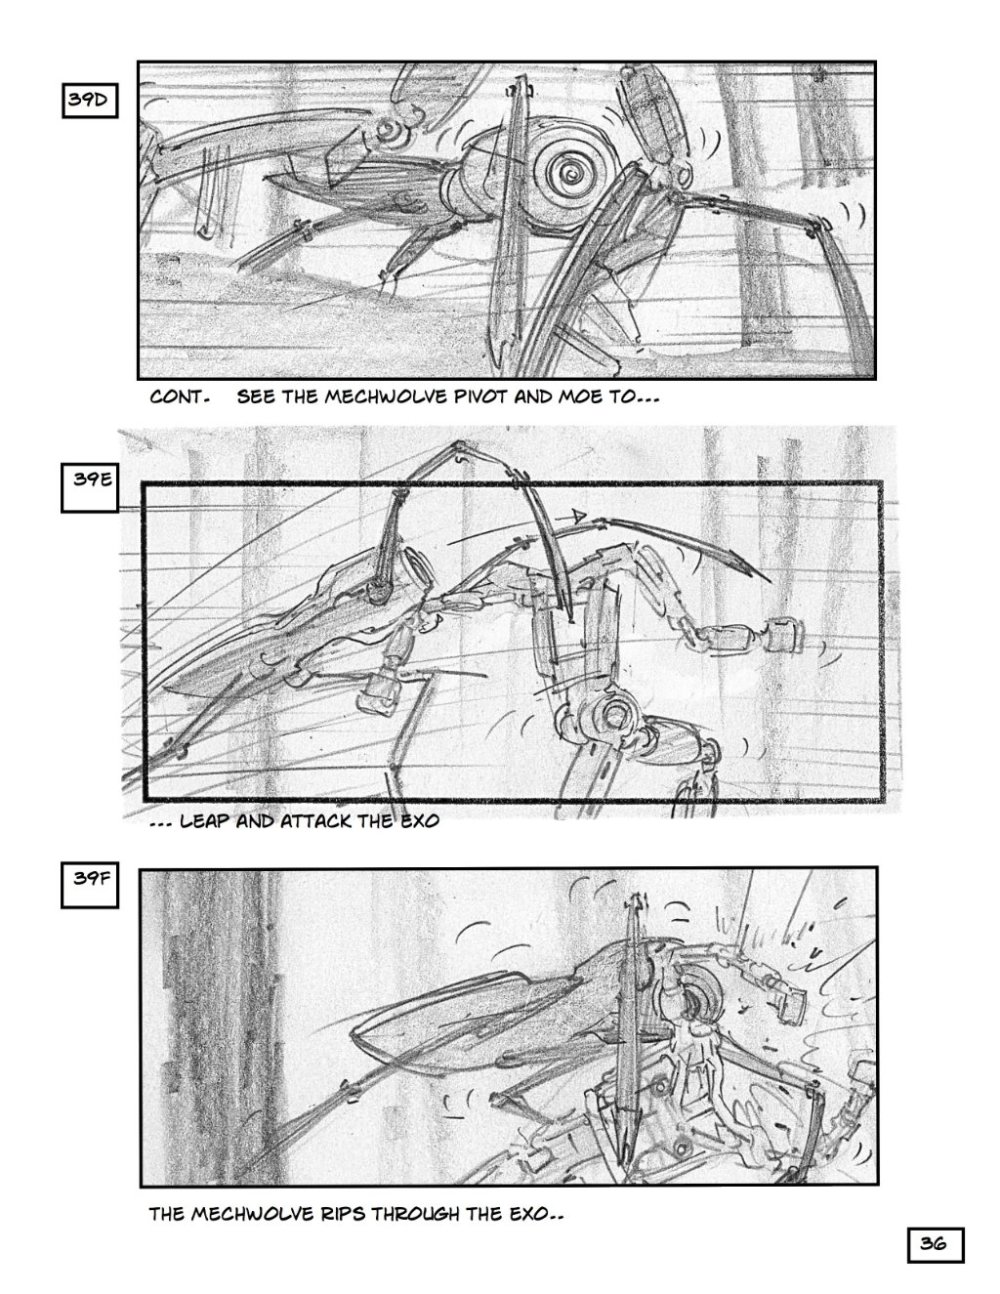 Mogelijke storyboards 'Robopocalypse' tonen robot-achtervolgingsscène